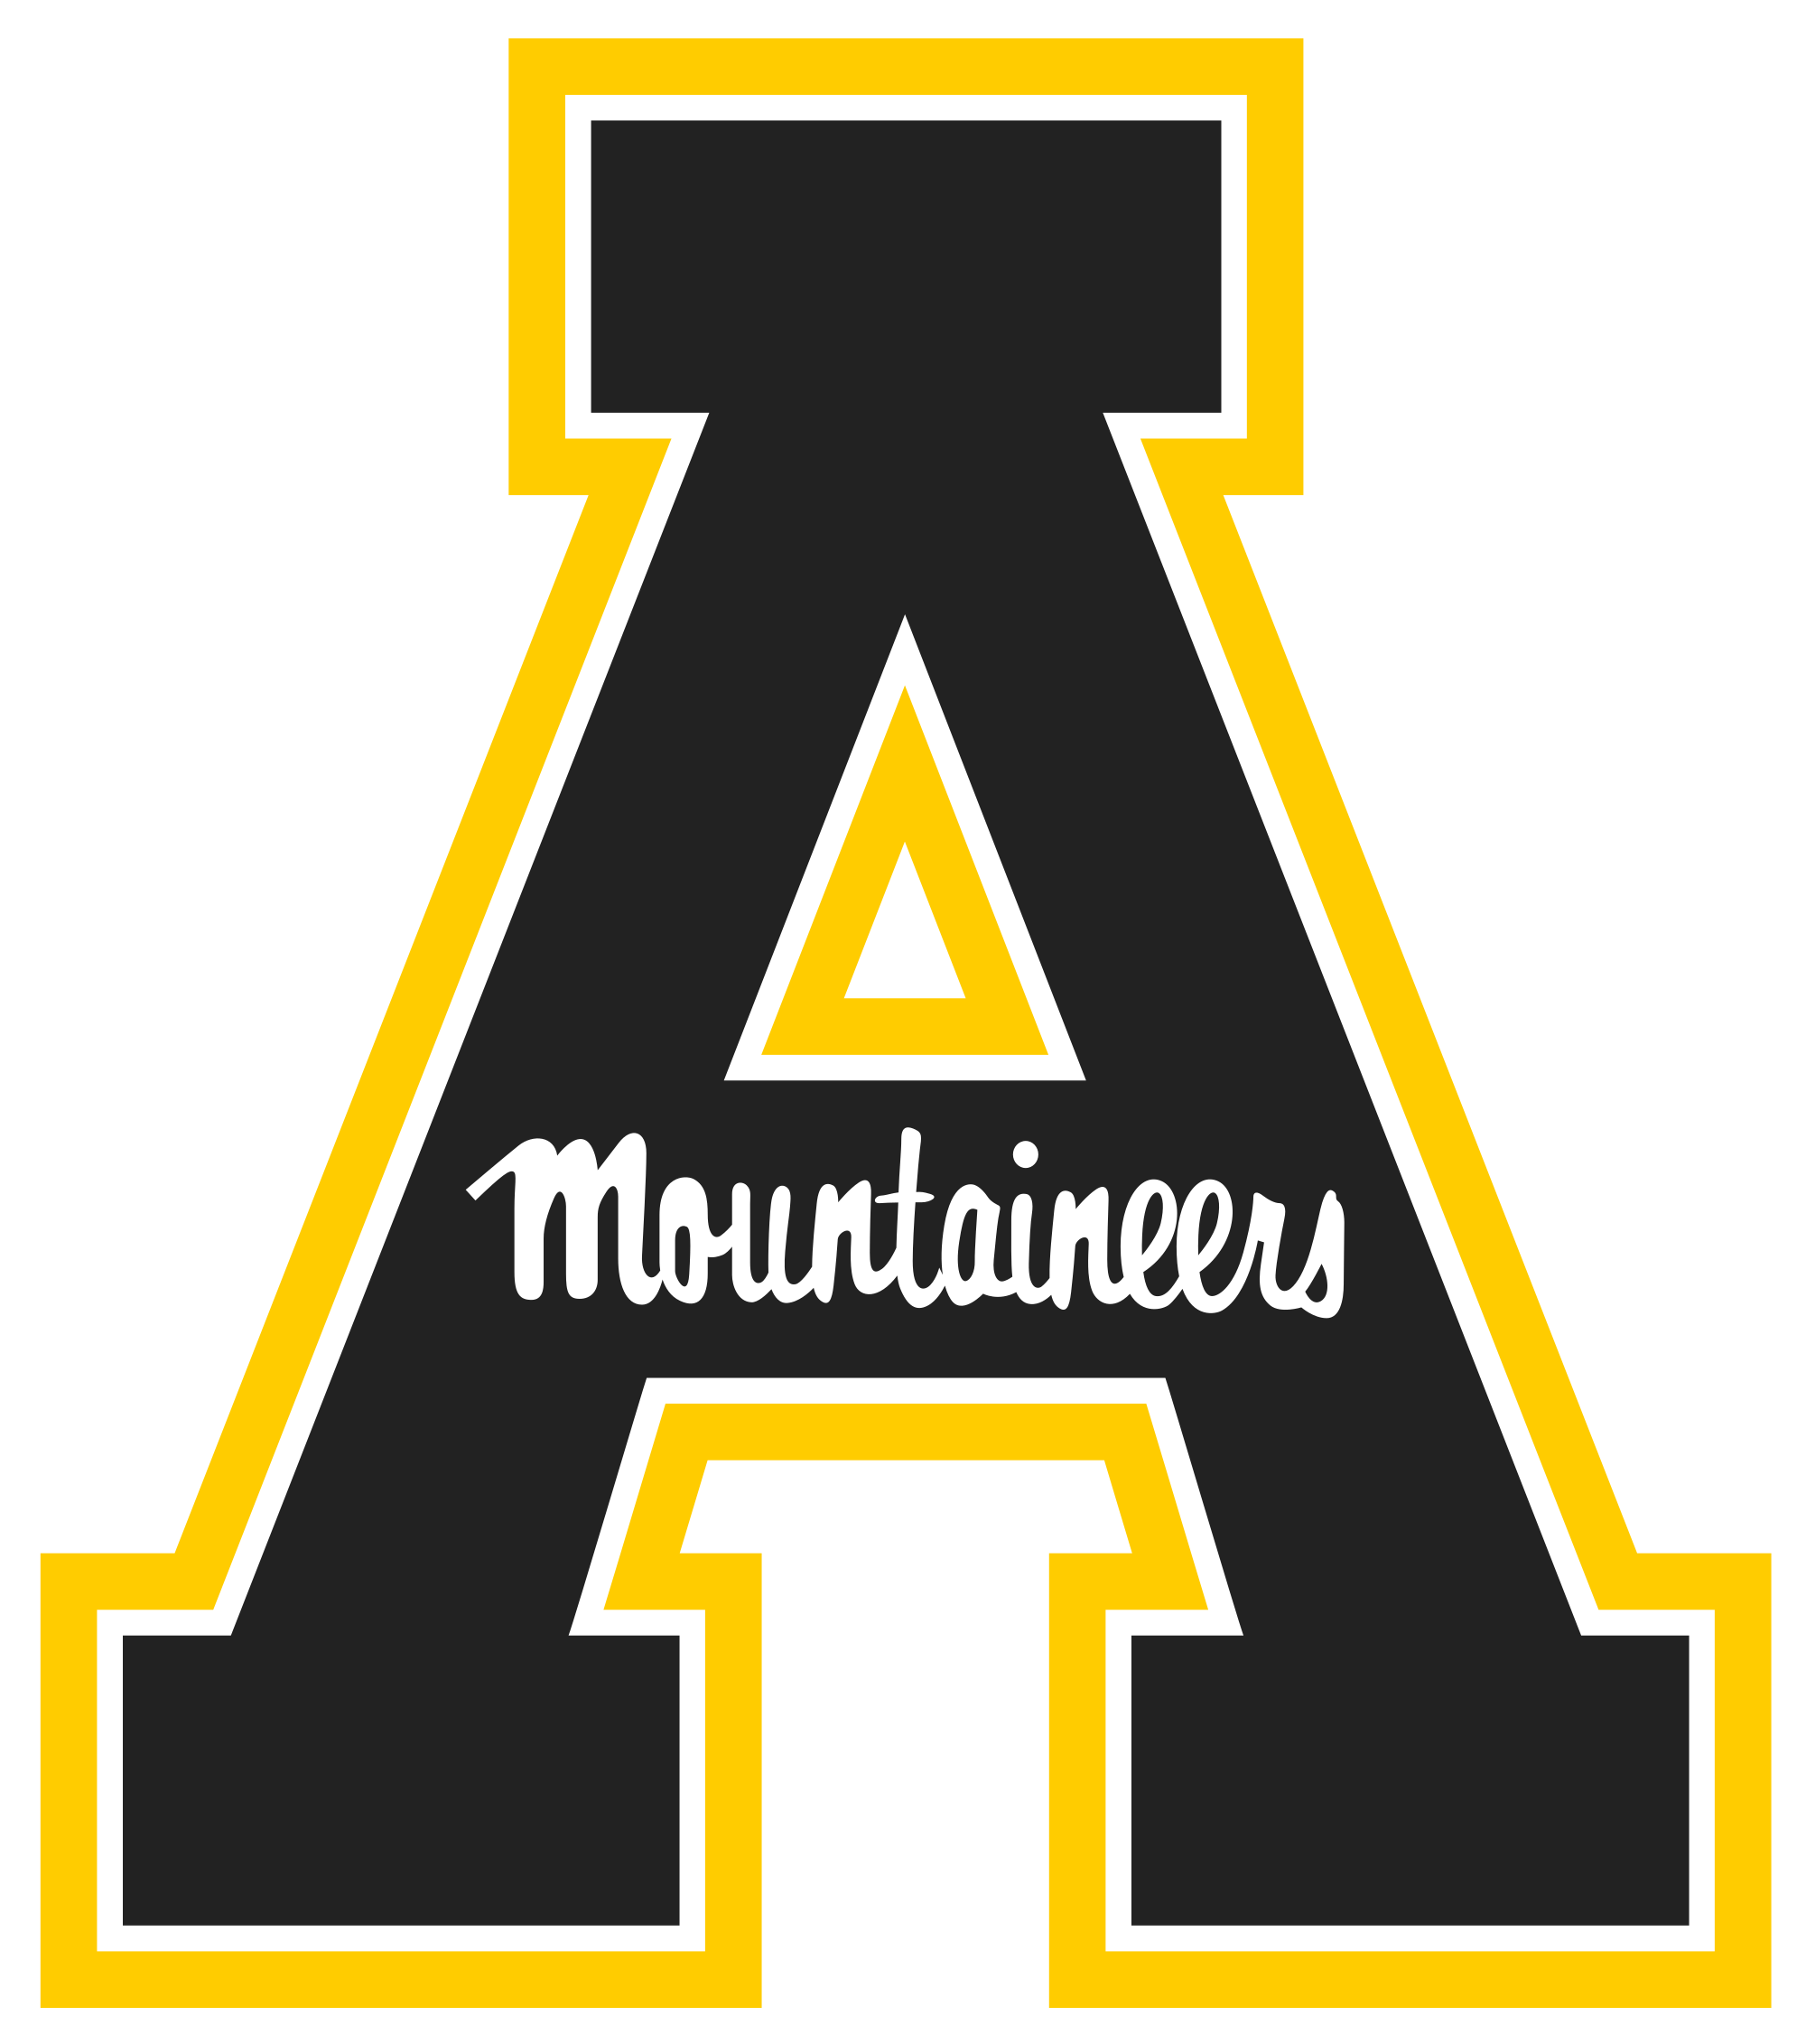 Appalachian State University Logo - File:Appalachian State Mountaineers logo.svg - Wikimedia Commons